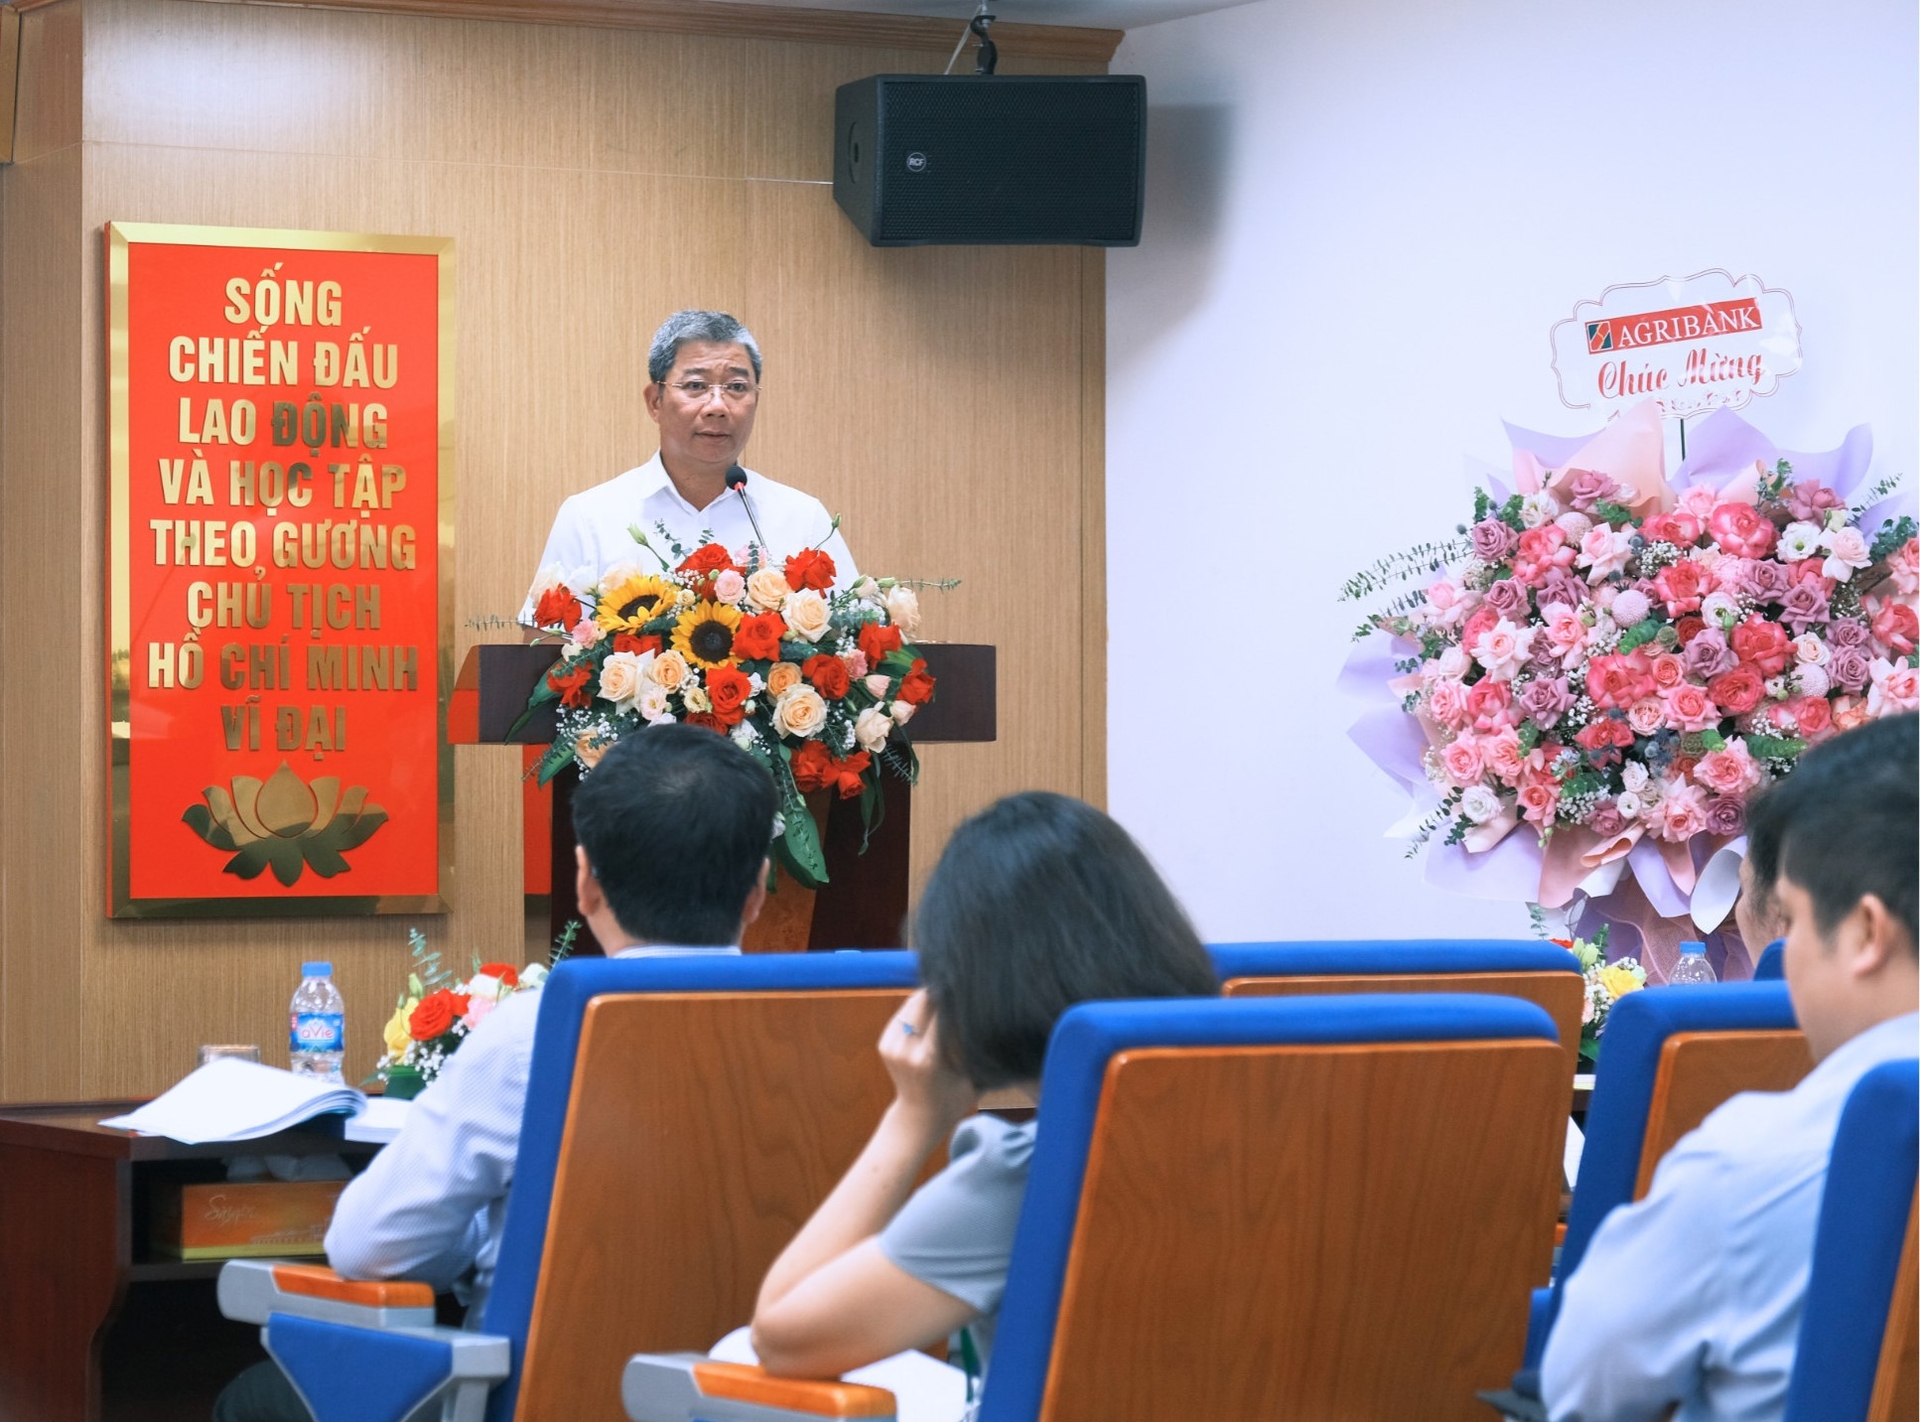 Ông Nguyễn Tiến Hải – Chủ tịch Hội đồng quản trị Bảo hiểm Agribank phát biểu tại Đại hội.